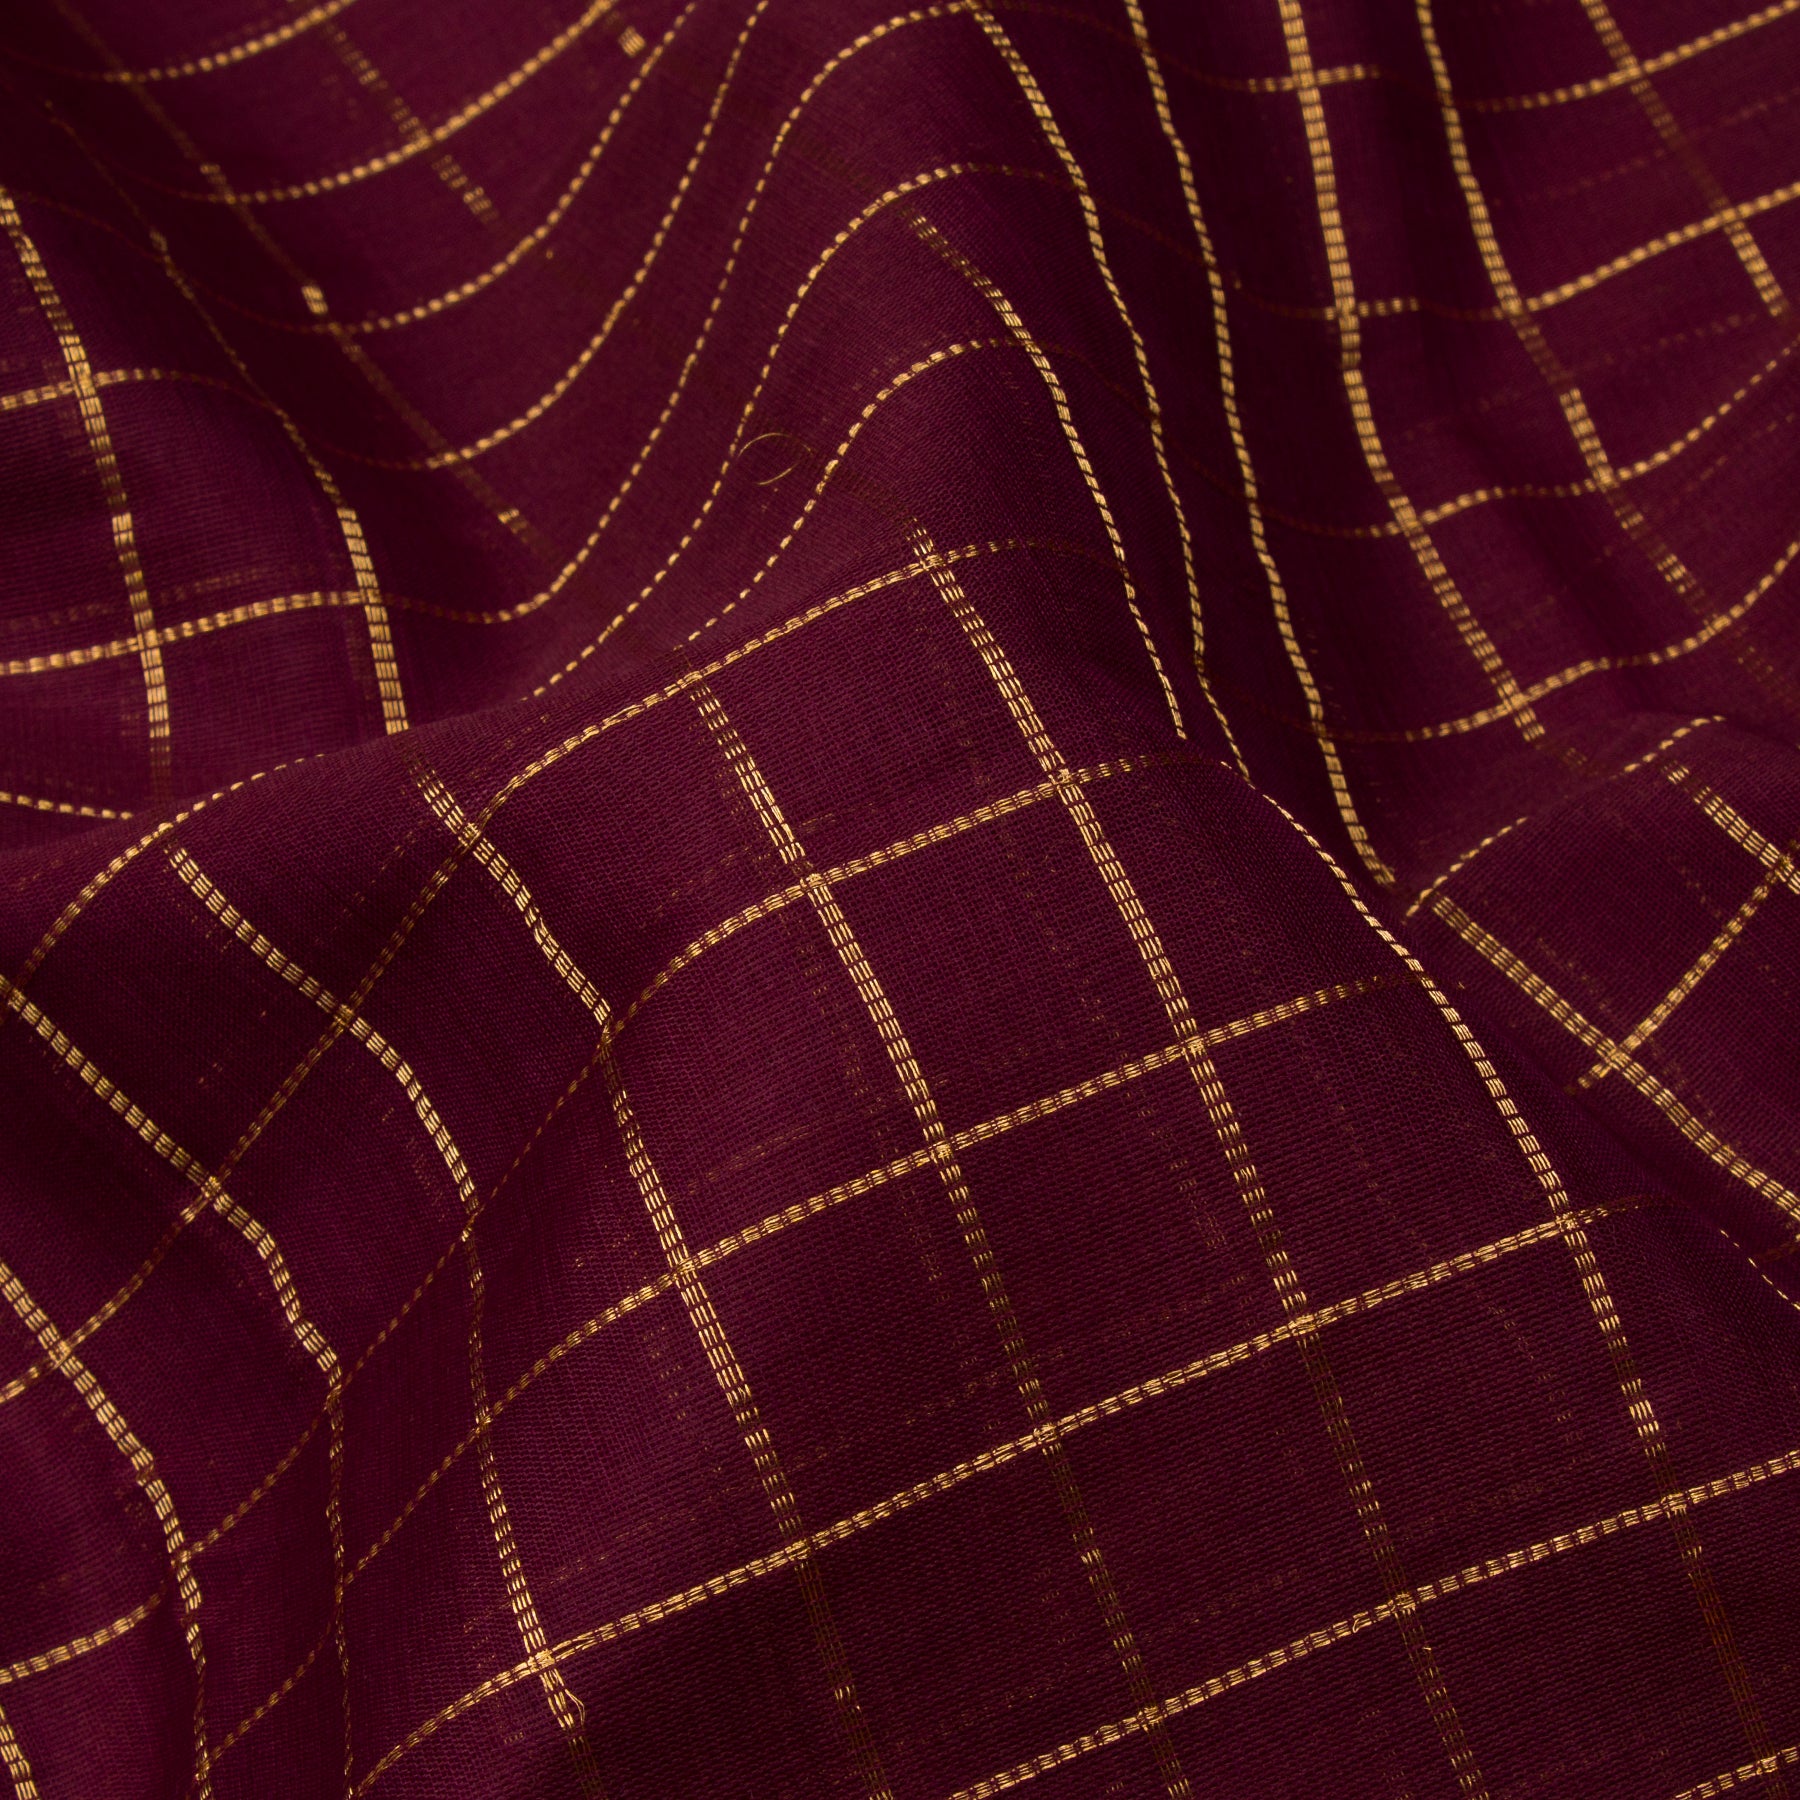 Kanakavalli Gadwal Silk/Cotton Sari 23-604-HS005-07870 - Fabric View